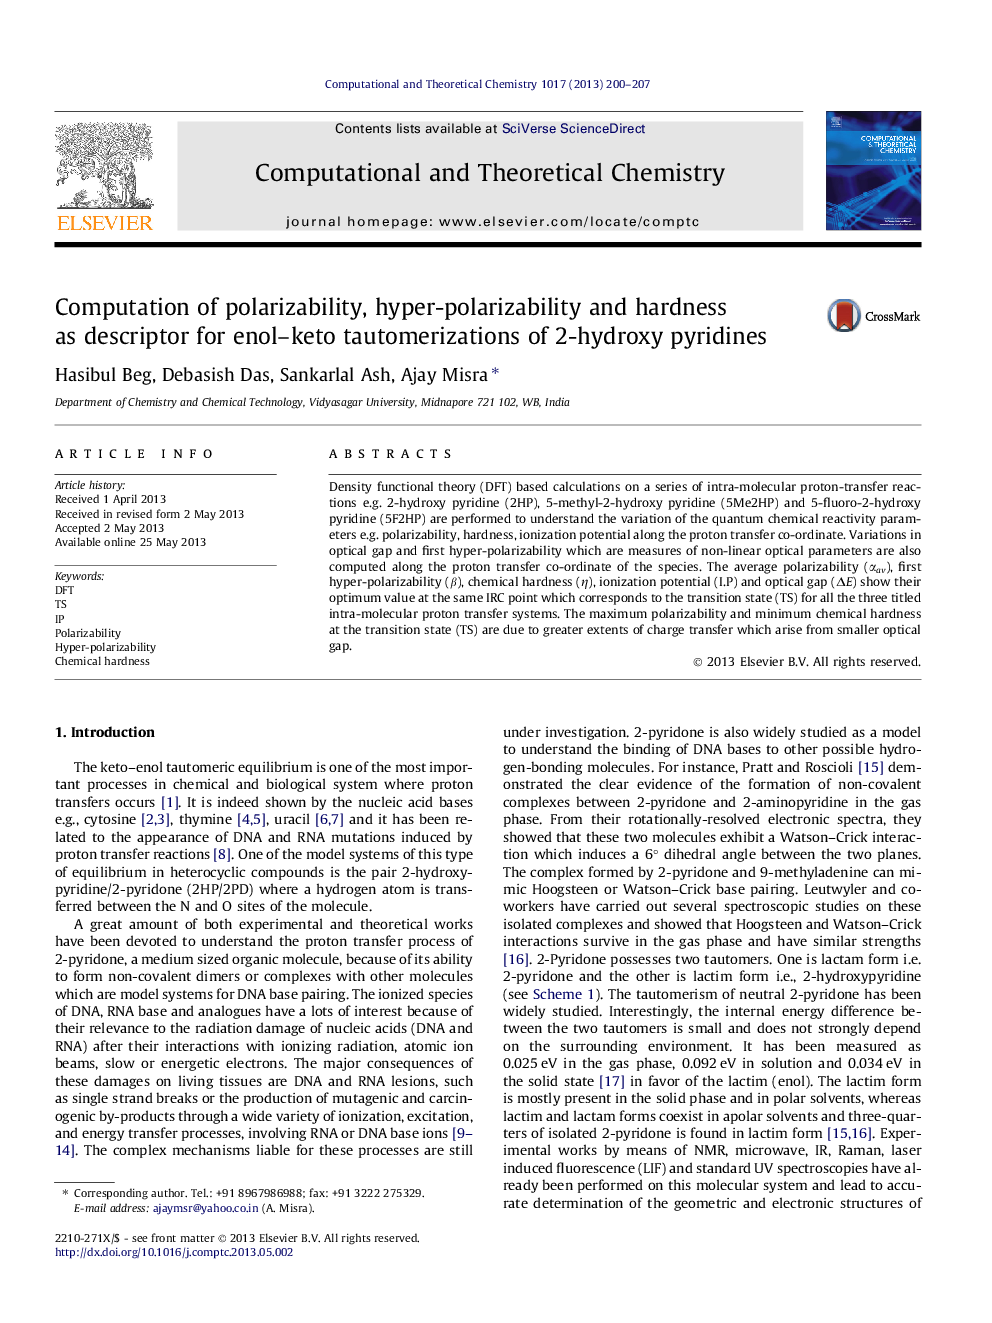 محاسبه قطبش پذیری، قطبش پذیری بالا و سختی به عنوان توصیفگر برای اتولیزاسیون ینول-کتو 2-هیدروکسی پیریدین 